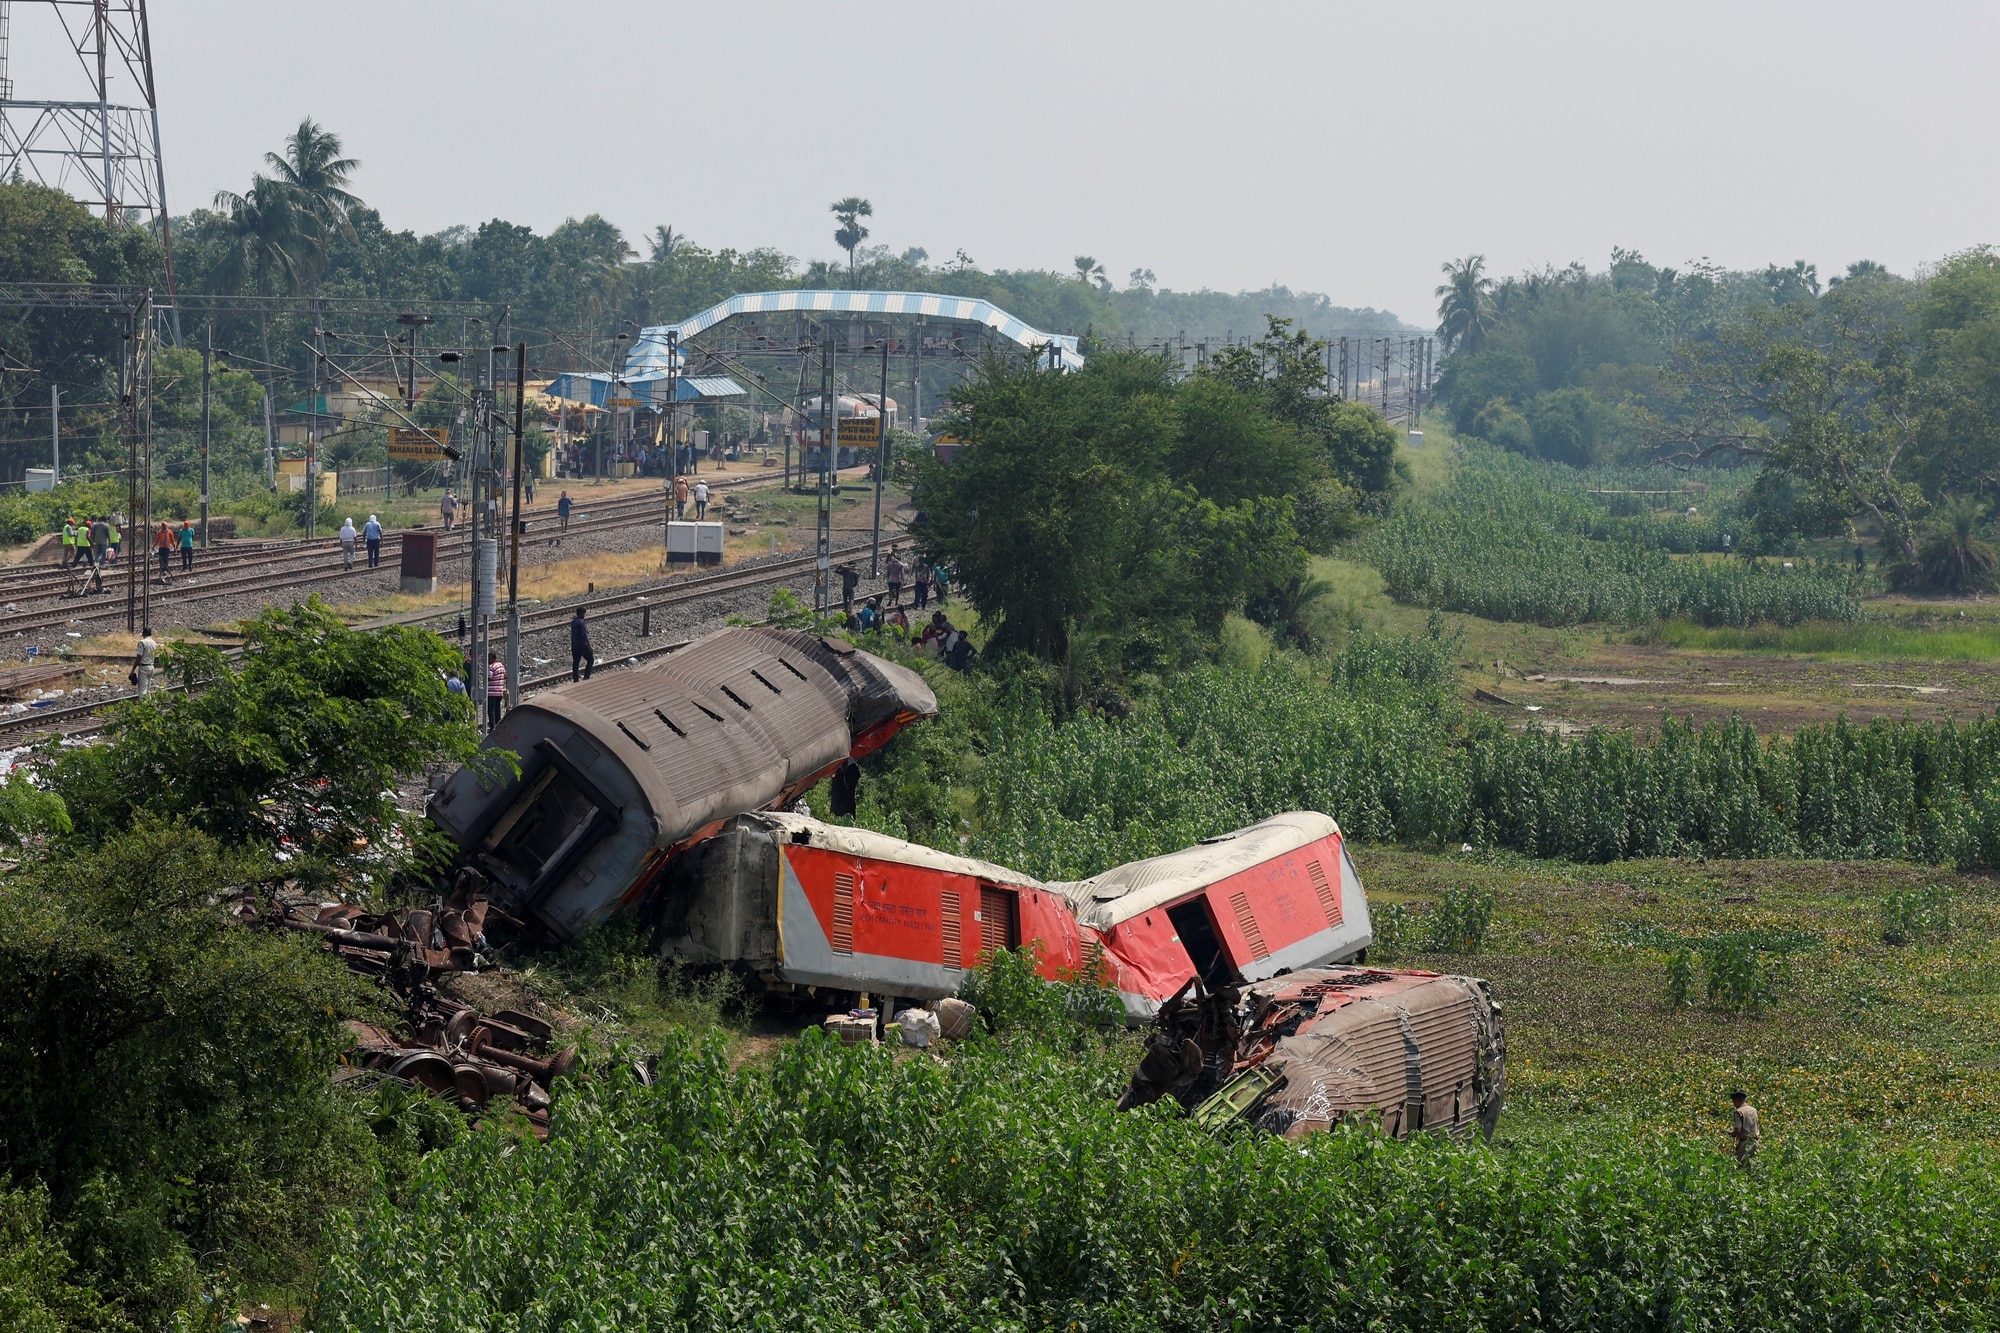 Ấn Độ xác định nguyên nhân thảm kịch đường sắt, không loại trừ hành động phá hoại - Ảnh 2.